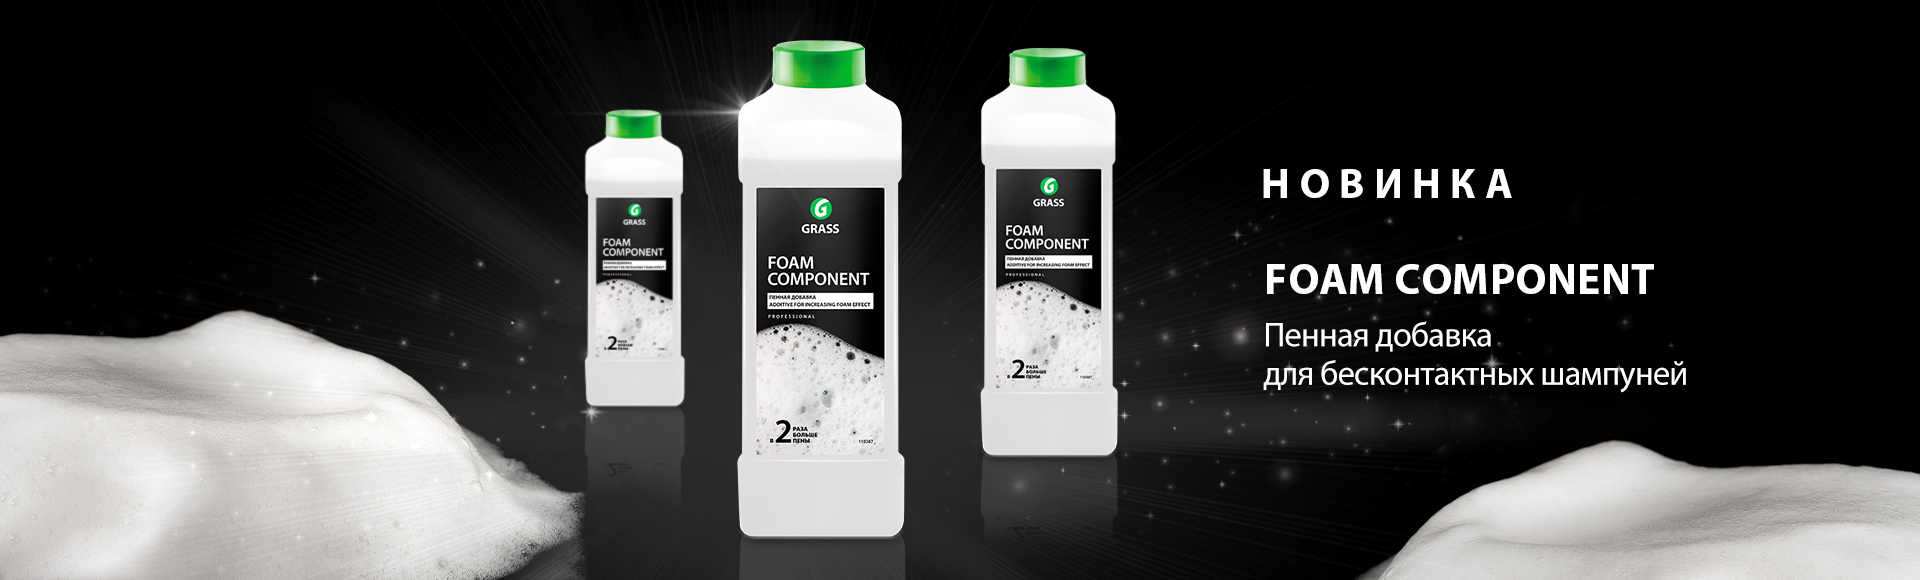 Foam component - добавка увеличивающая пенообразование бесконтактных шампуней!